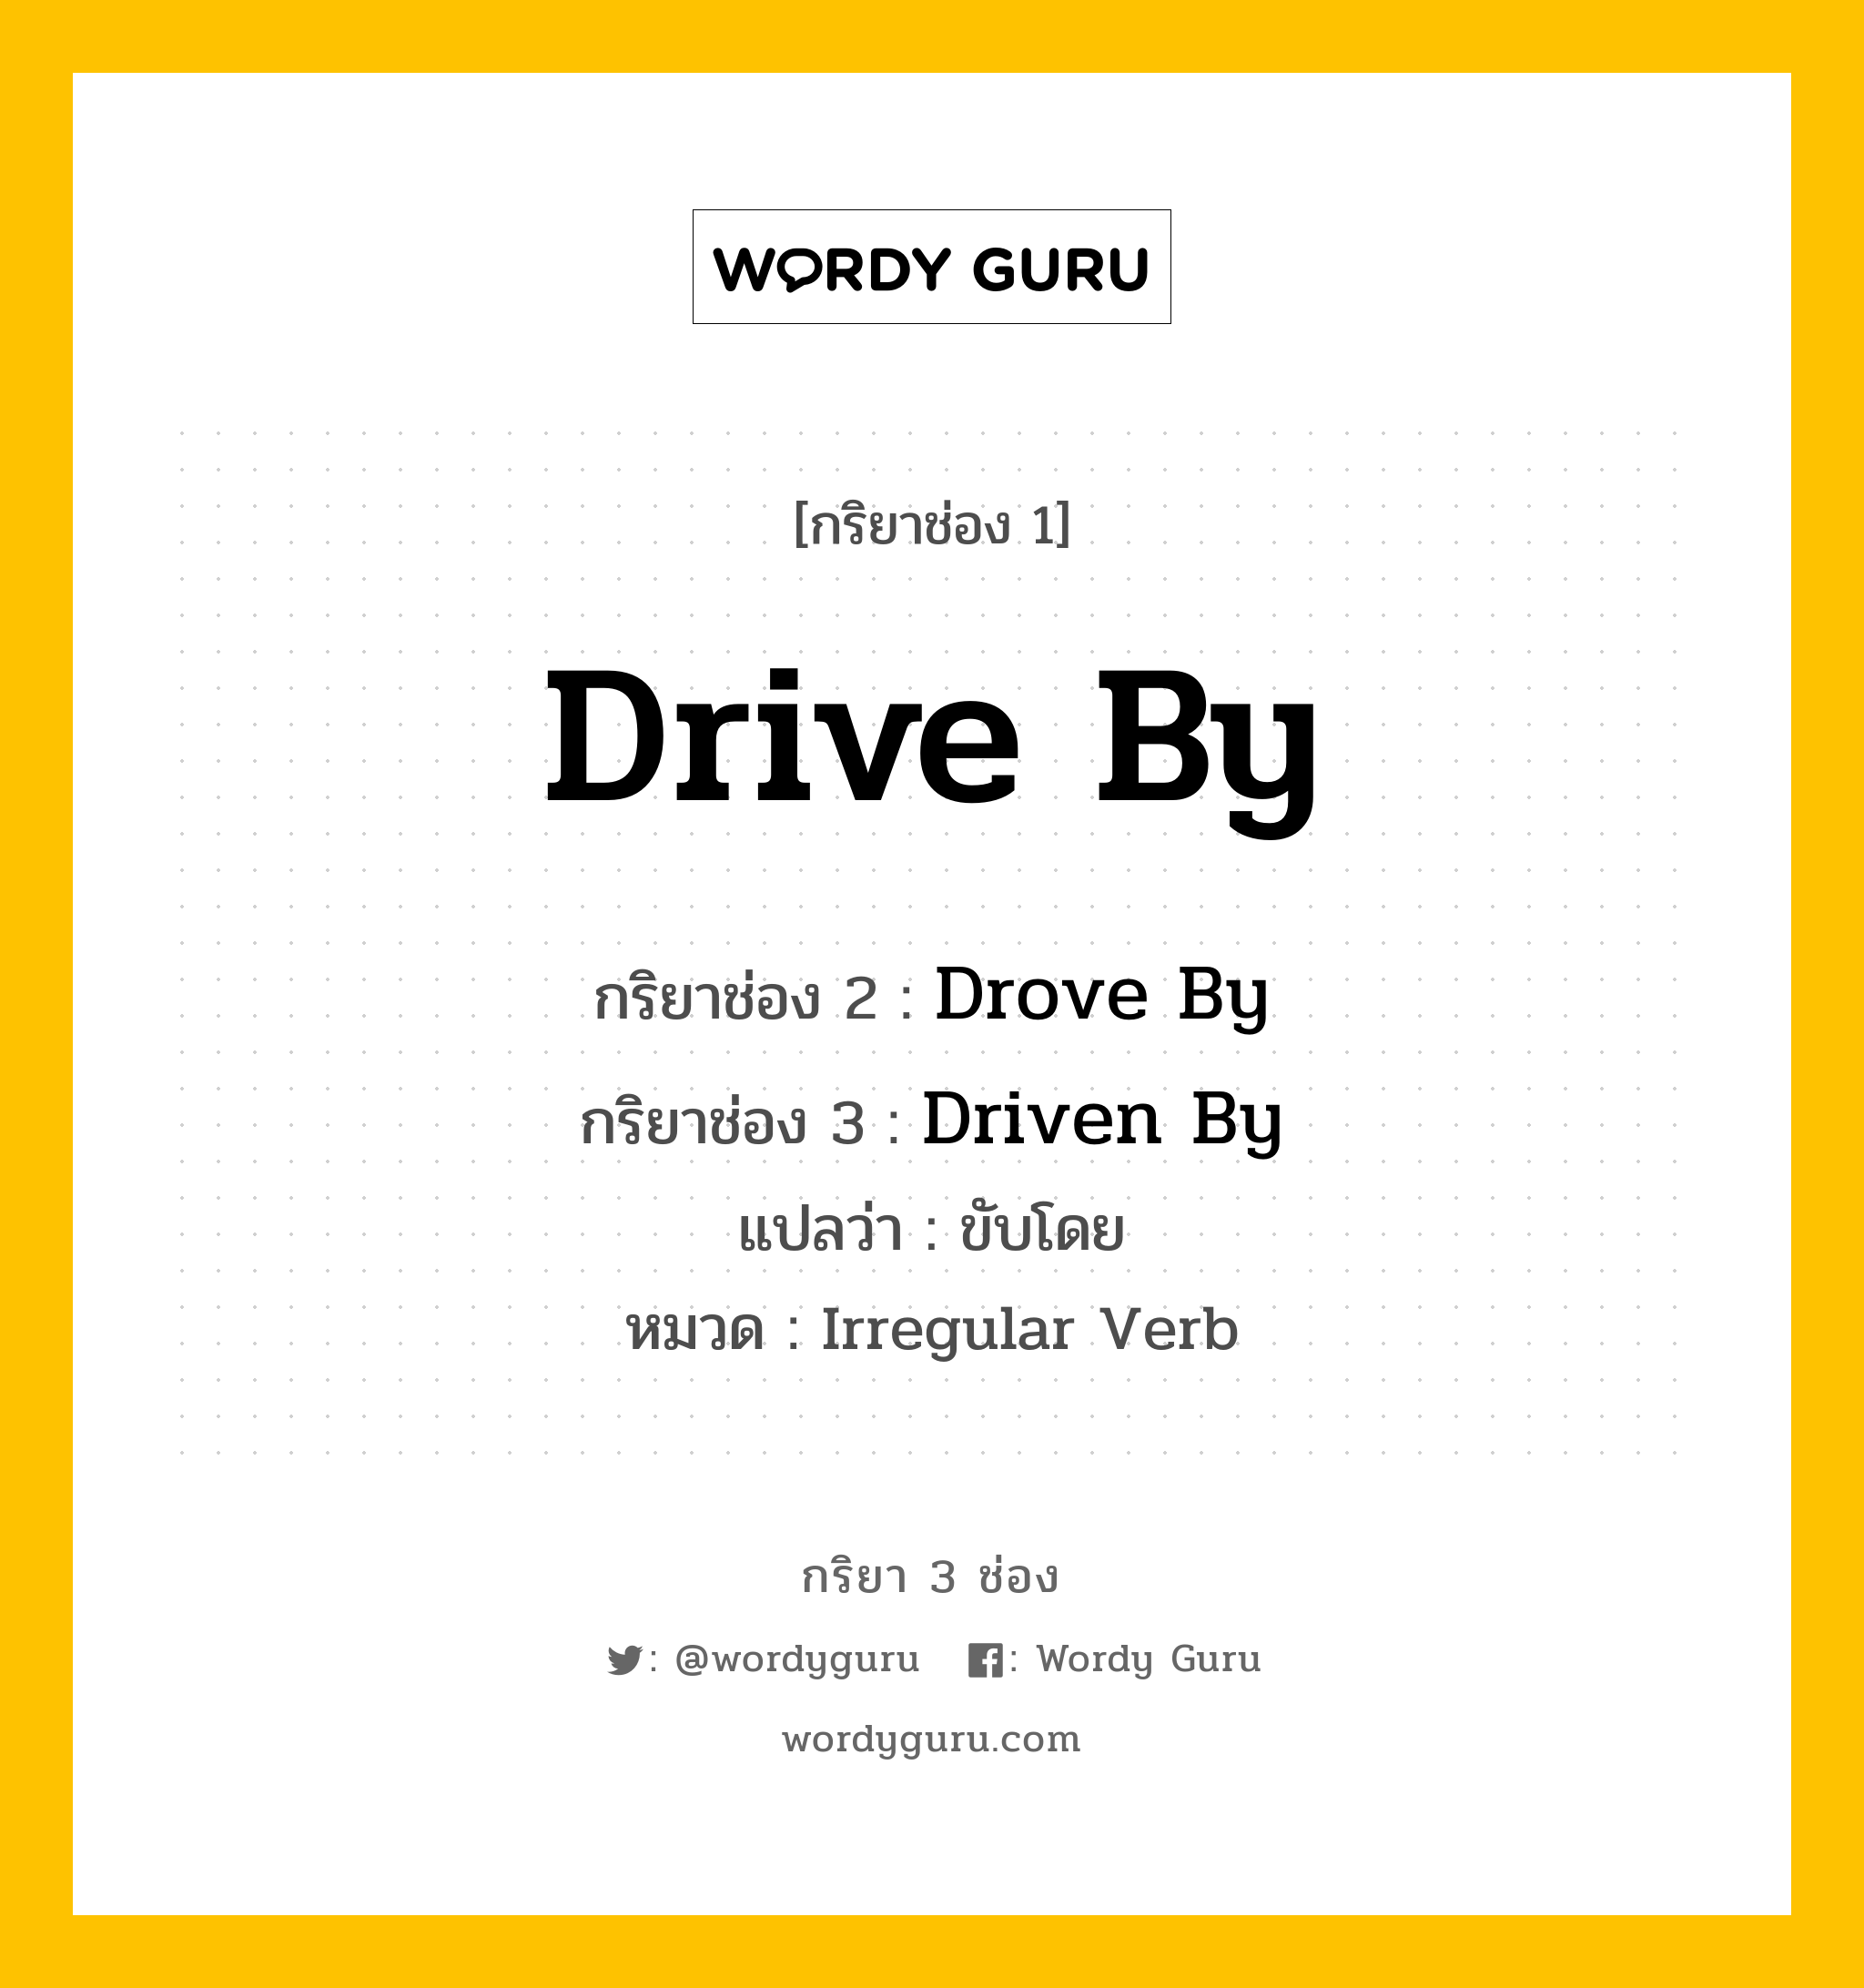 กริยา 3 ช่อง ของ Drive By คืออะไร? มาดูคำอ่าน คำแปลกันเลย, กริยาช่อง 1 Drive By กริยาช่อง 2 Drove By กริยาช่อง 3 Driven By แปลว่า ขับโดย หมวด Irregular Verb หมวด Irregular Verb